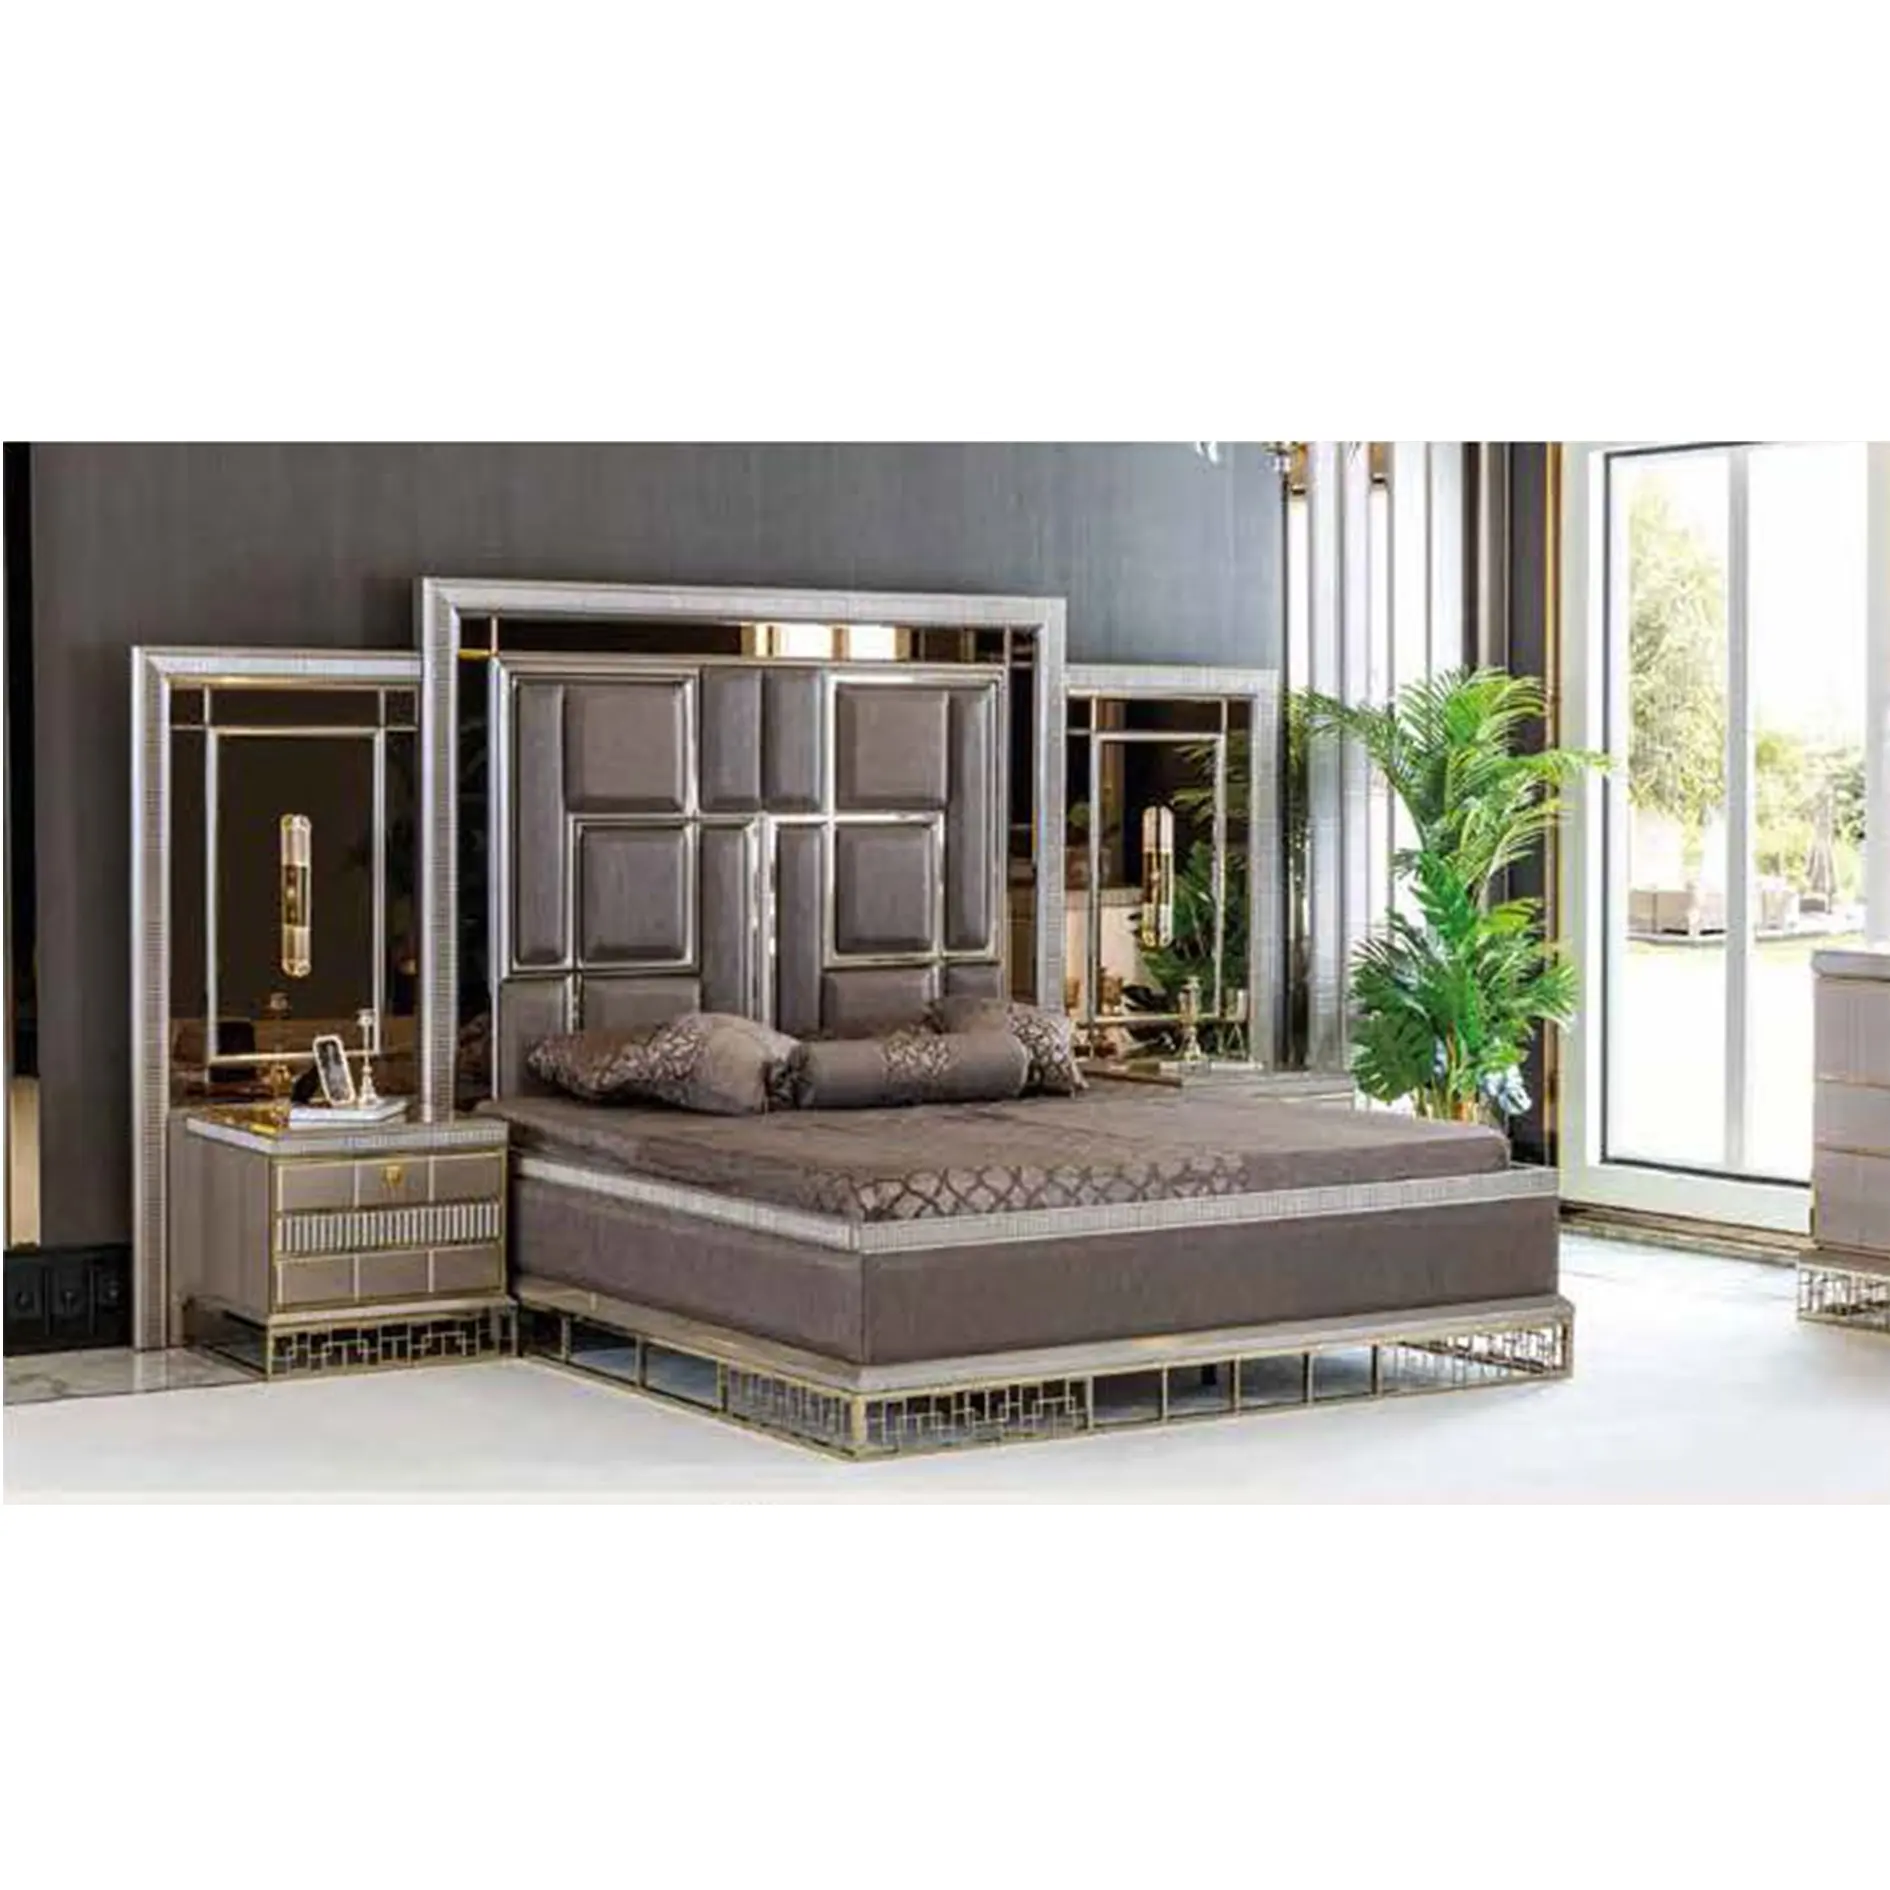 Ensemble de meubles de chambre à coucher luxueux avec armoire fonctionnelle Meubles de maison de qualité de luxe de Turquie Meubles turcs